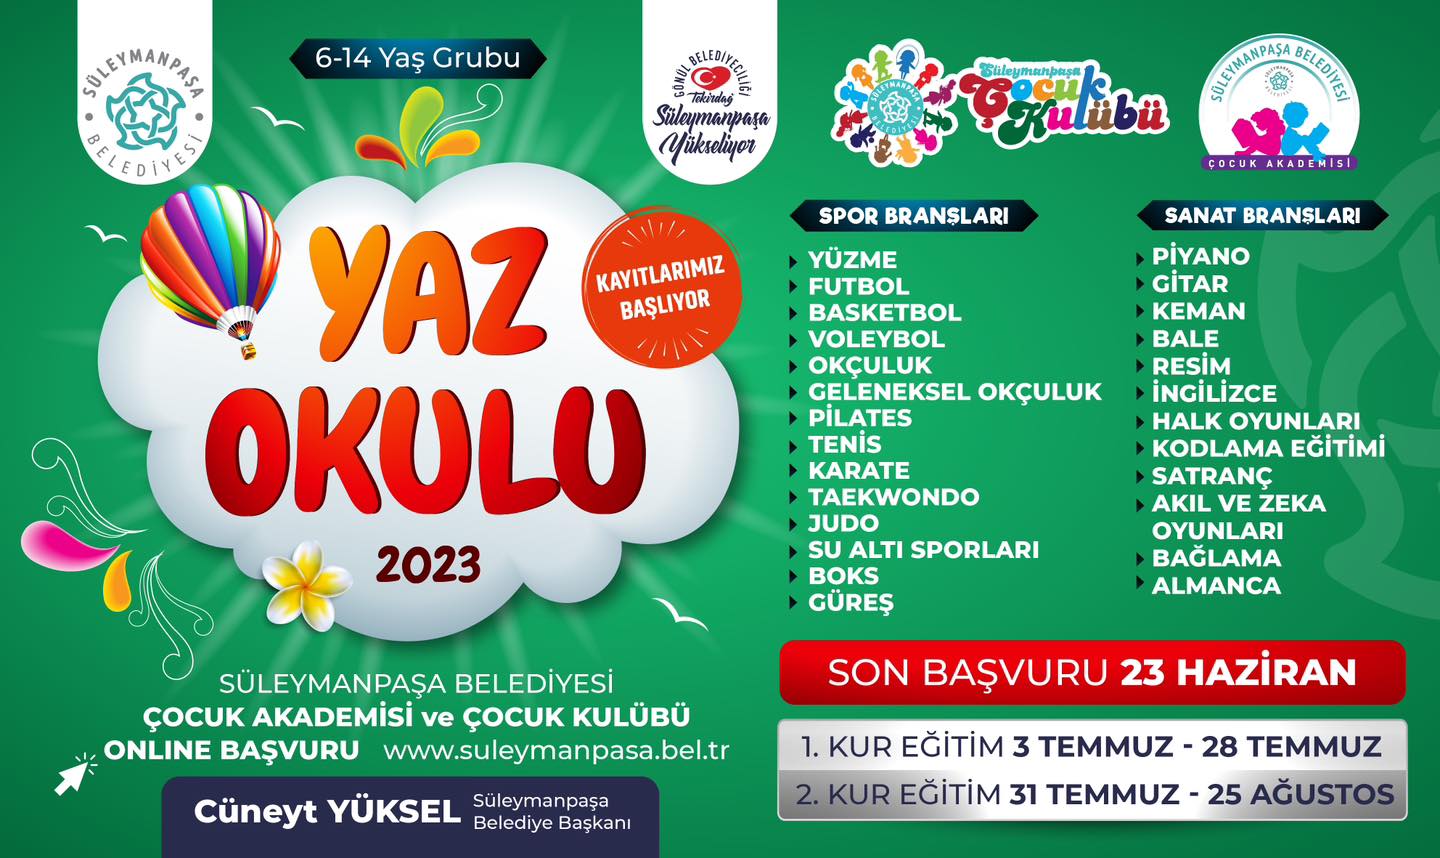 Süleymanpaşa Belediyesi Yaz Okulu Kayıtları Başladı